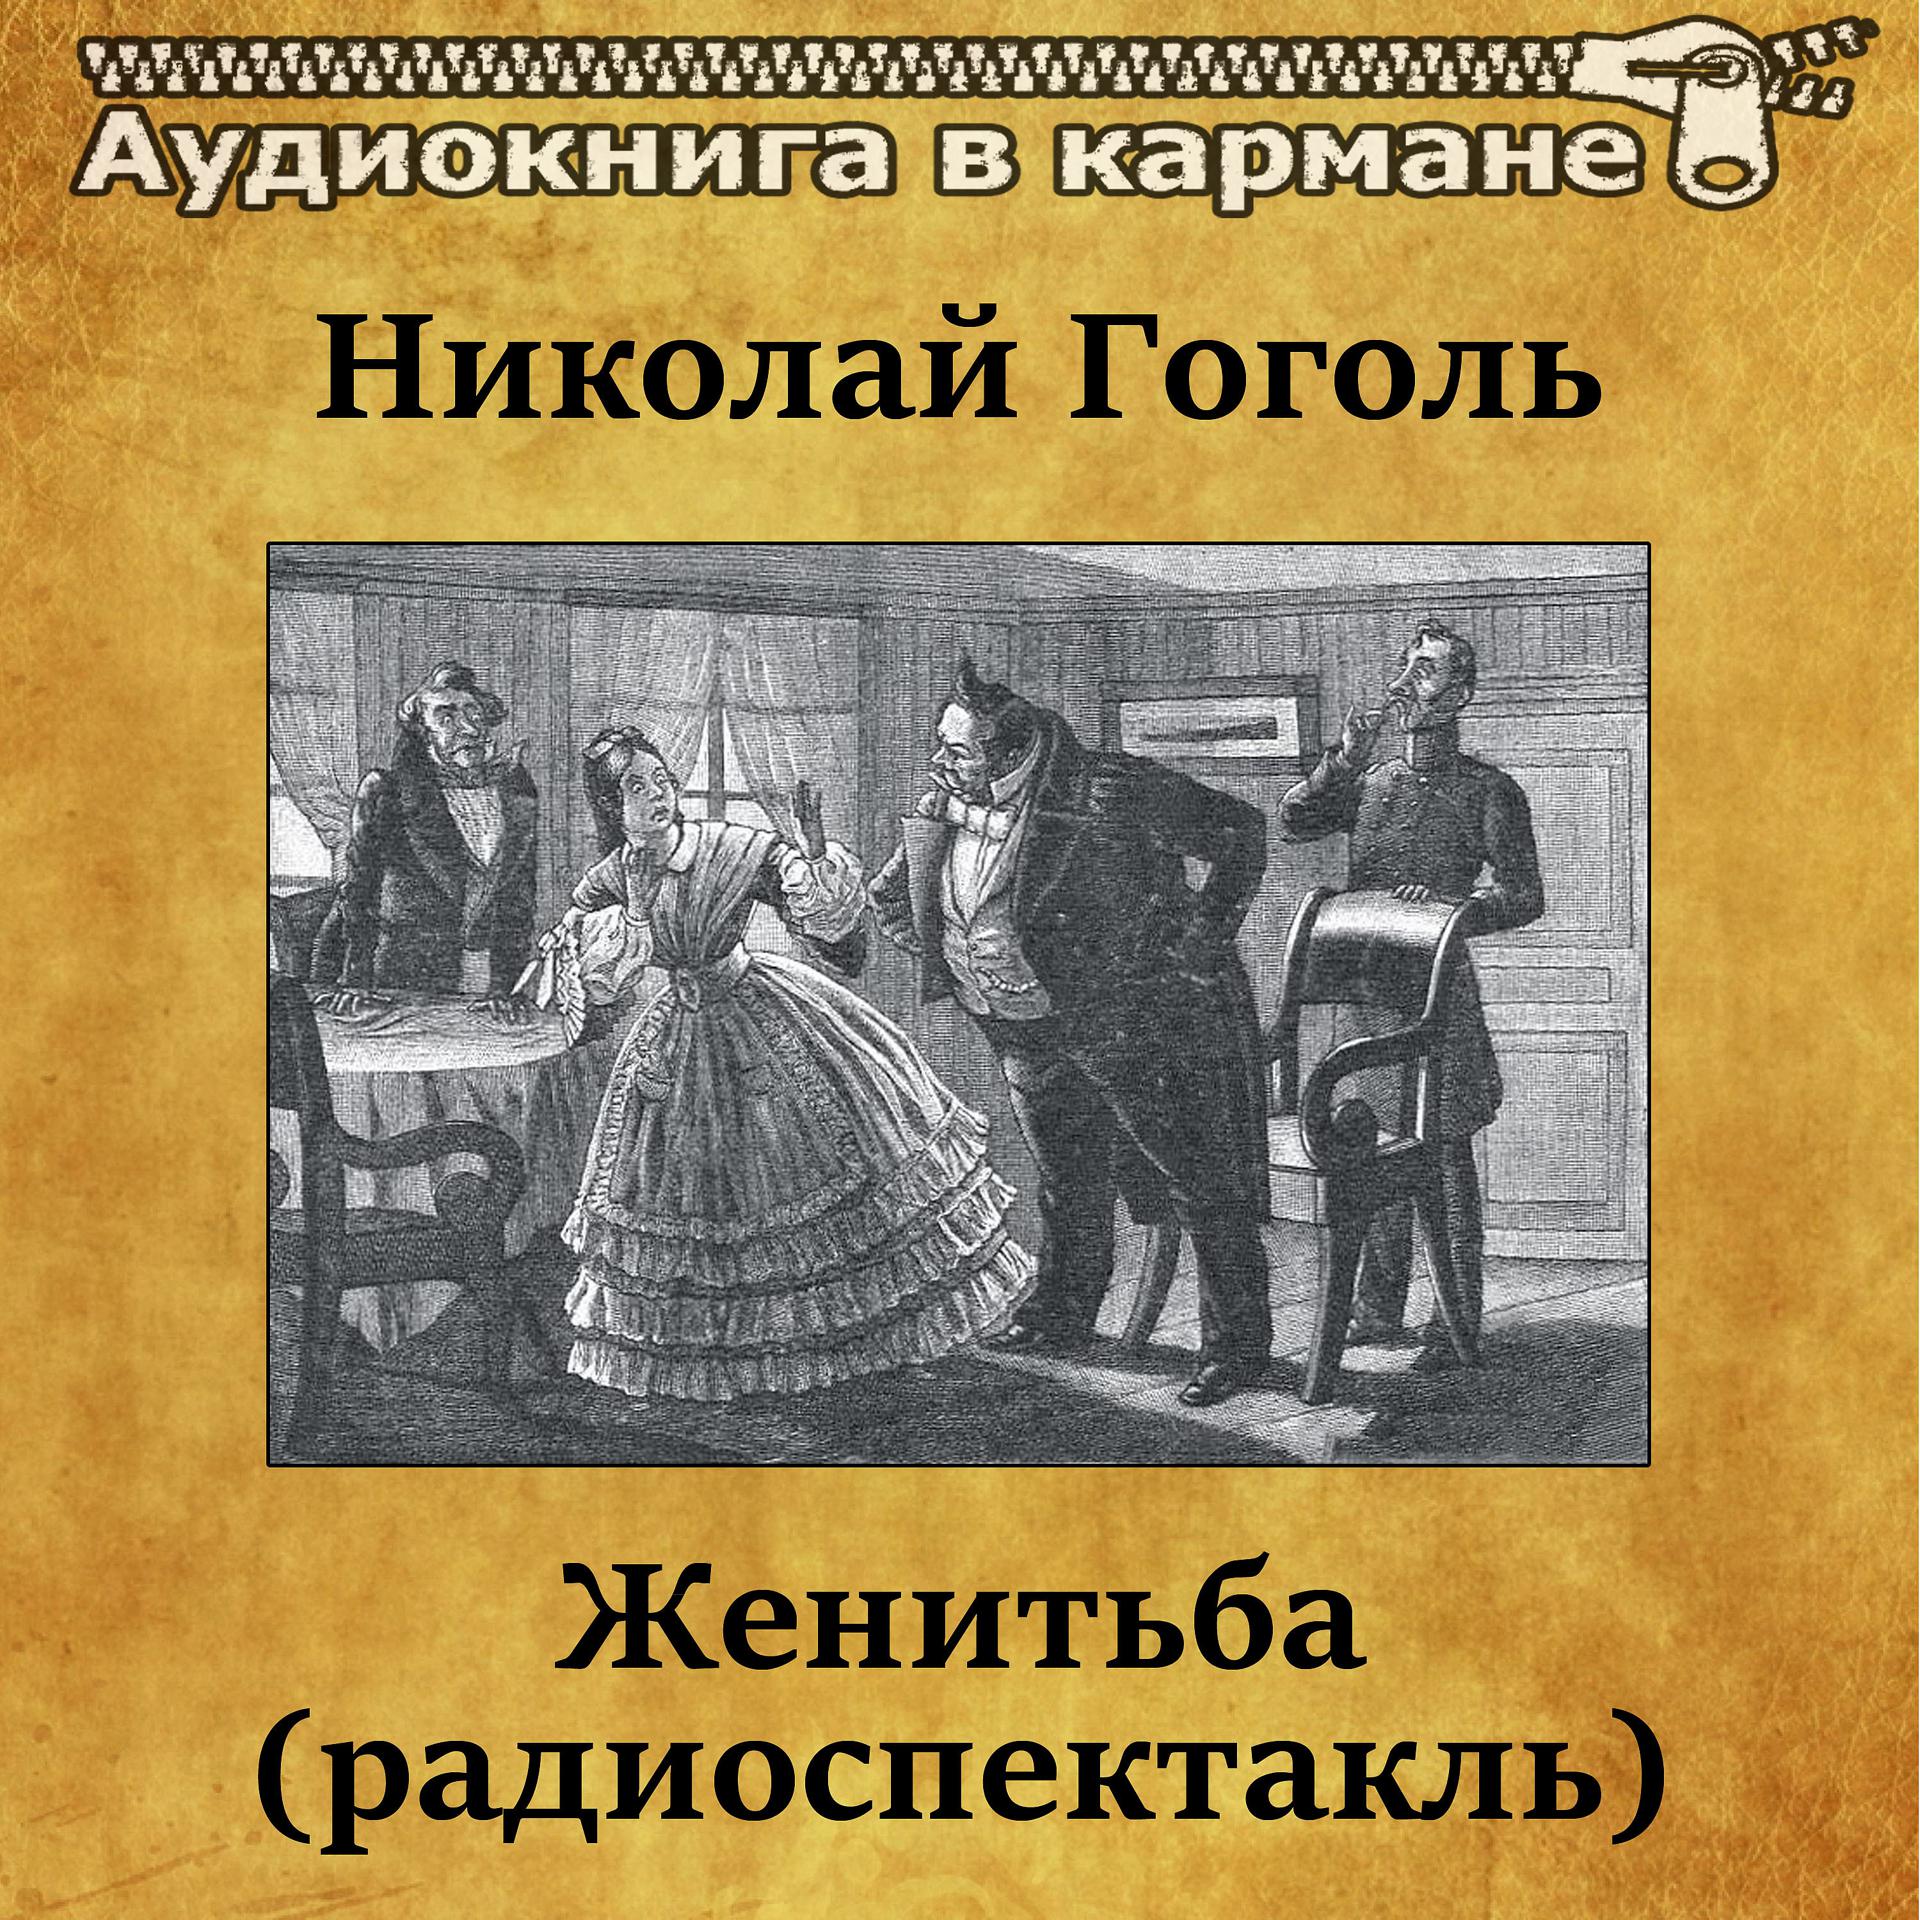 Постер к треку Аудиокнига в кармане, Лев Дуров - Женитьба, Чт. 3